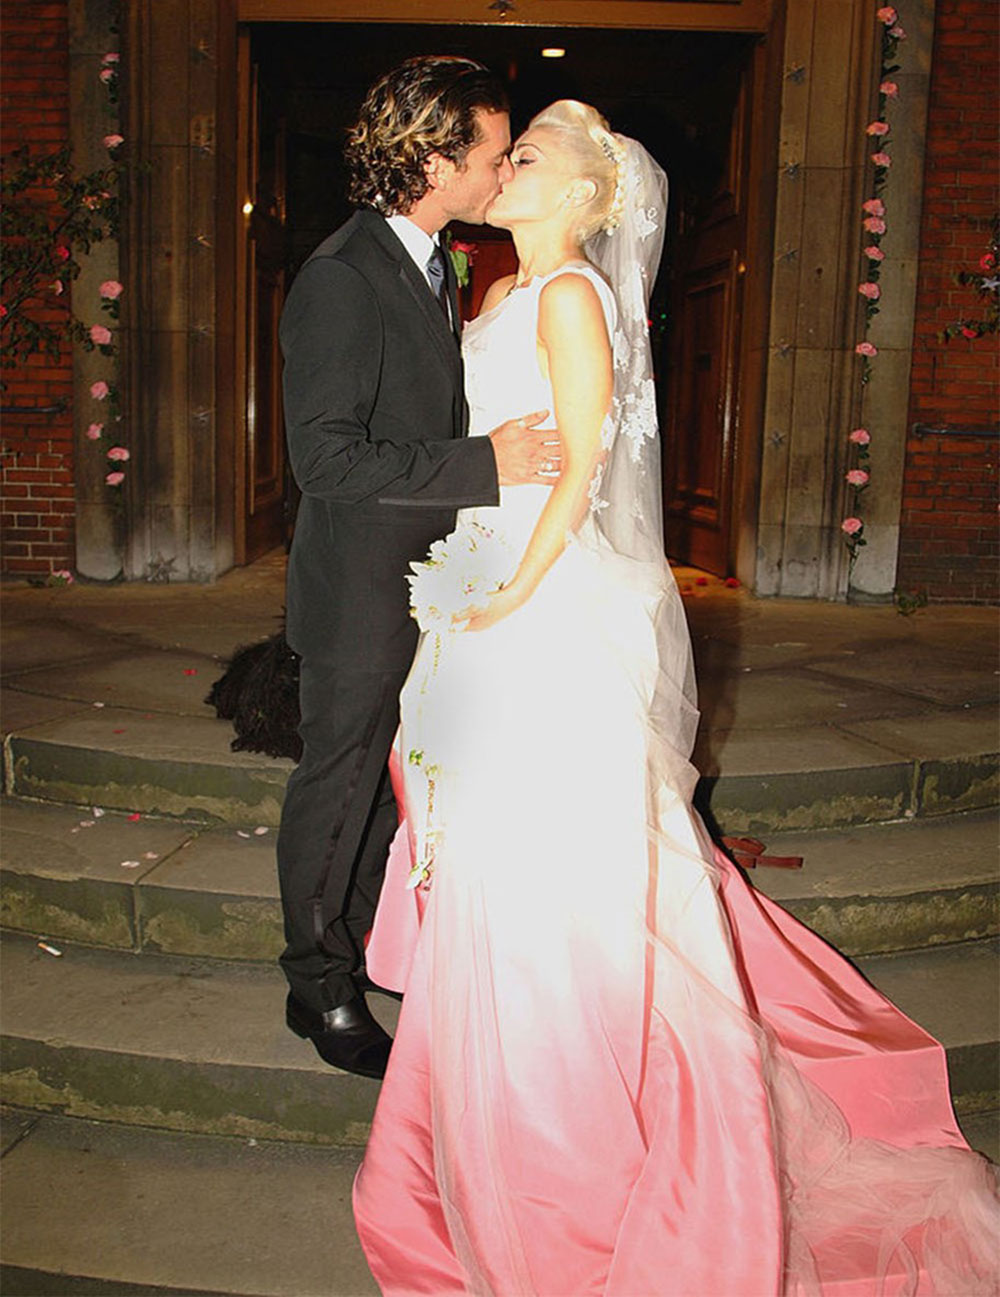 Gavin Rossdale and Gwen Stefani wedding: Photo: Getty